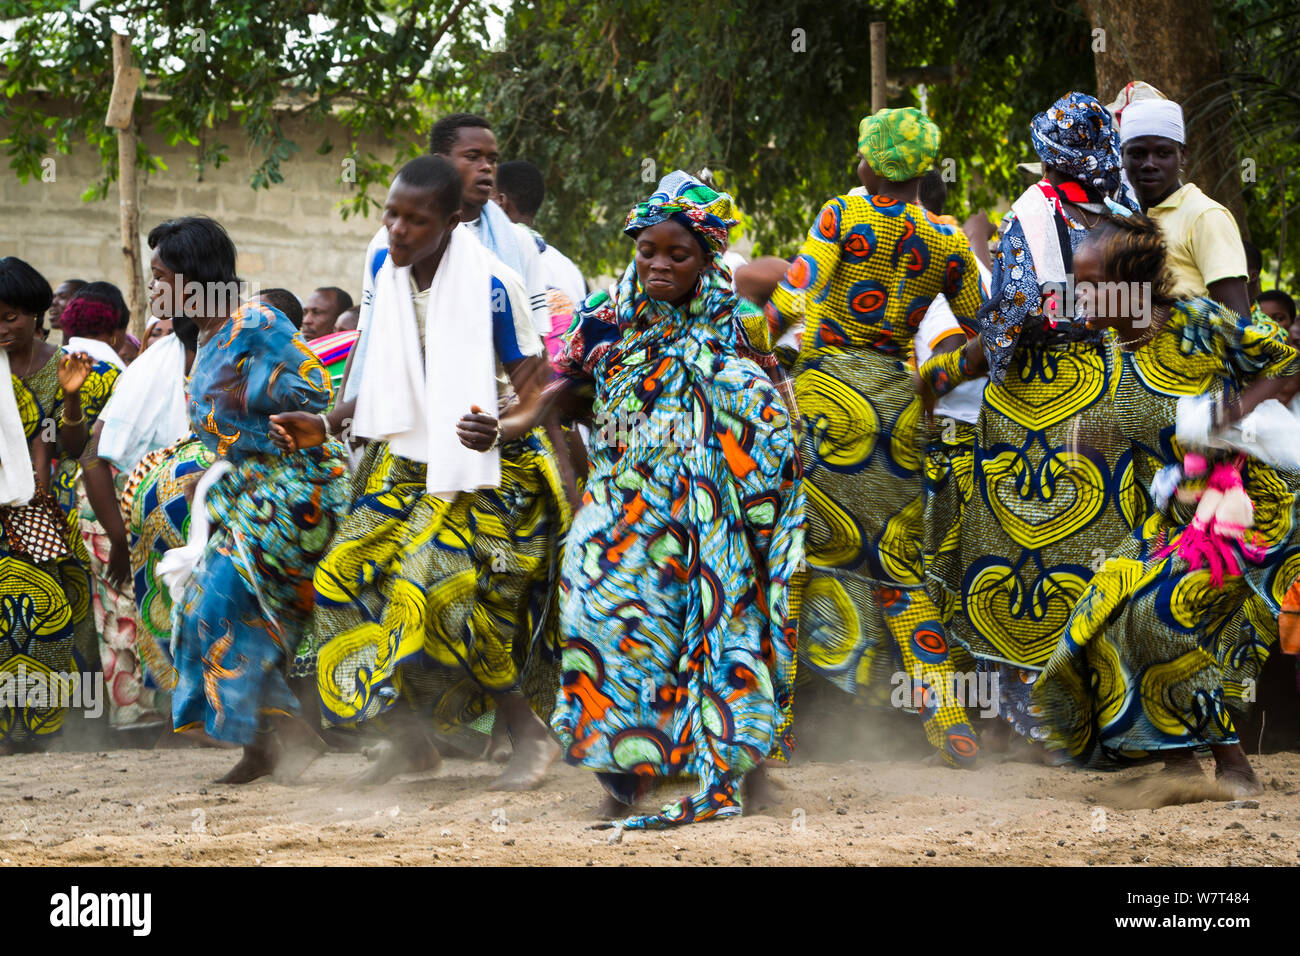 Männer und Frauen tanzen während Zangbeto voodoo Zeremonie. Benin, Afrika, Februar 2011. Stockfoto